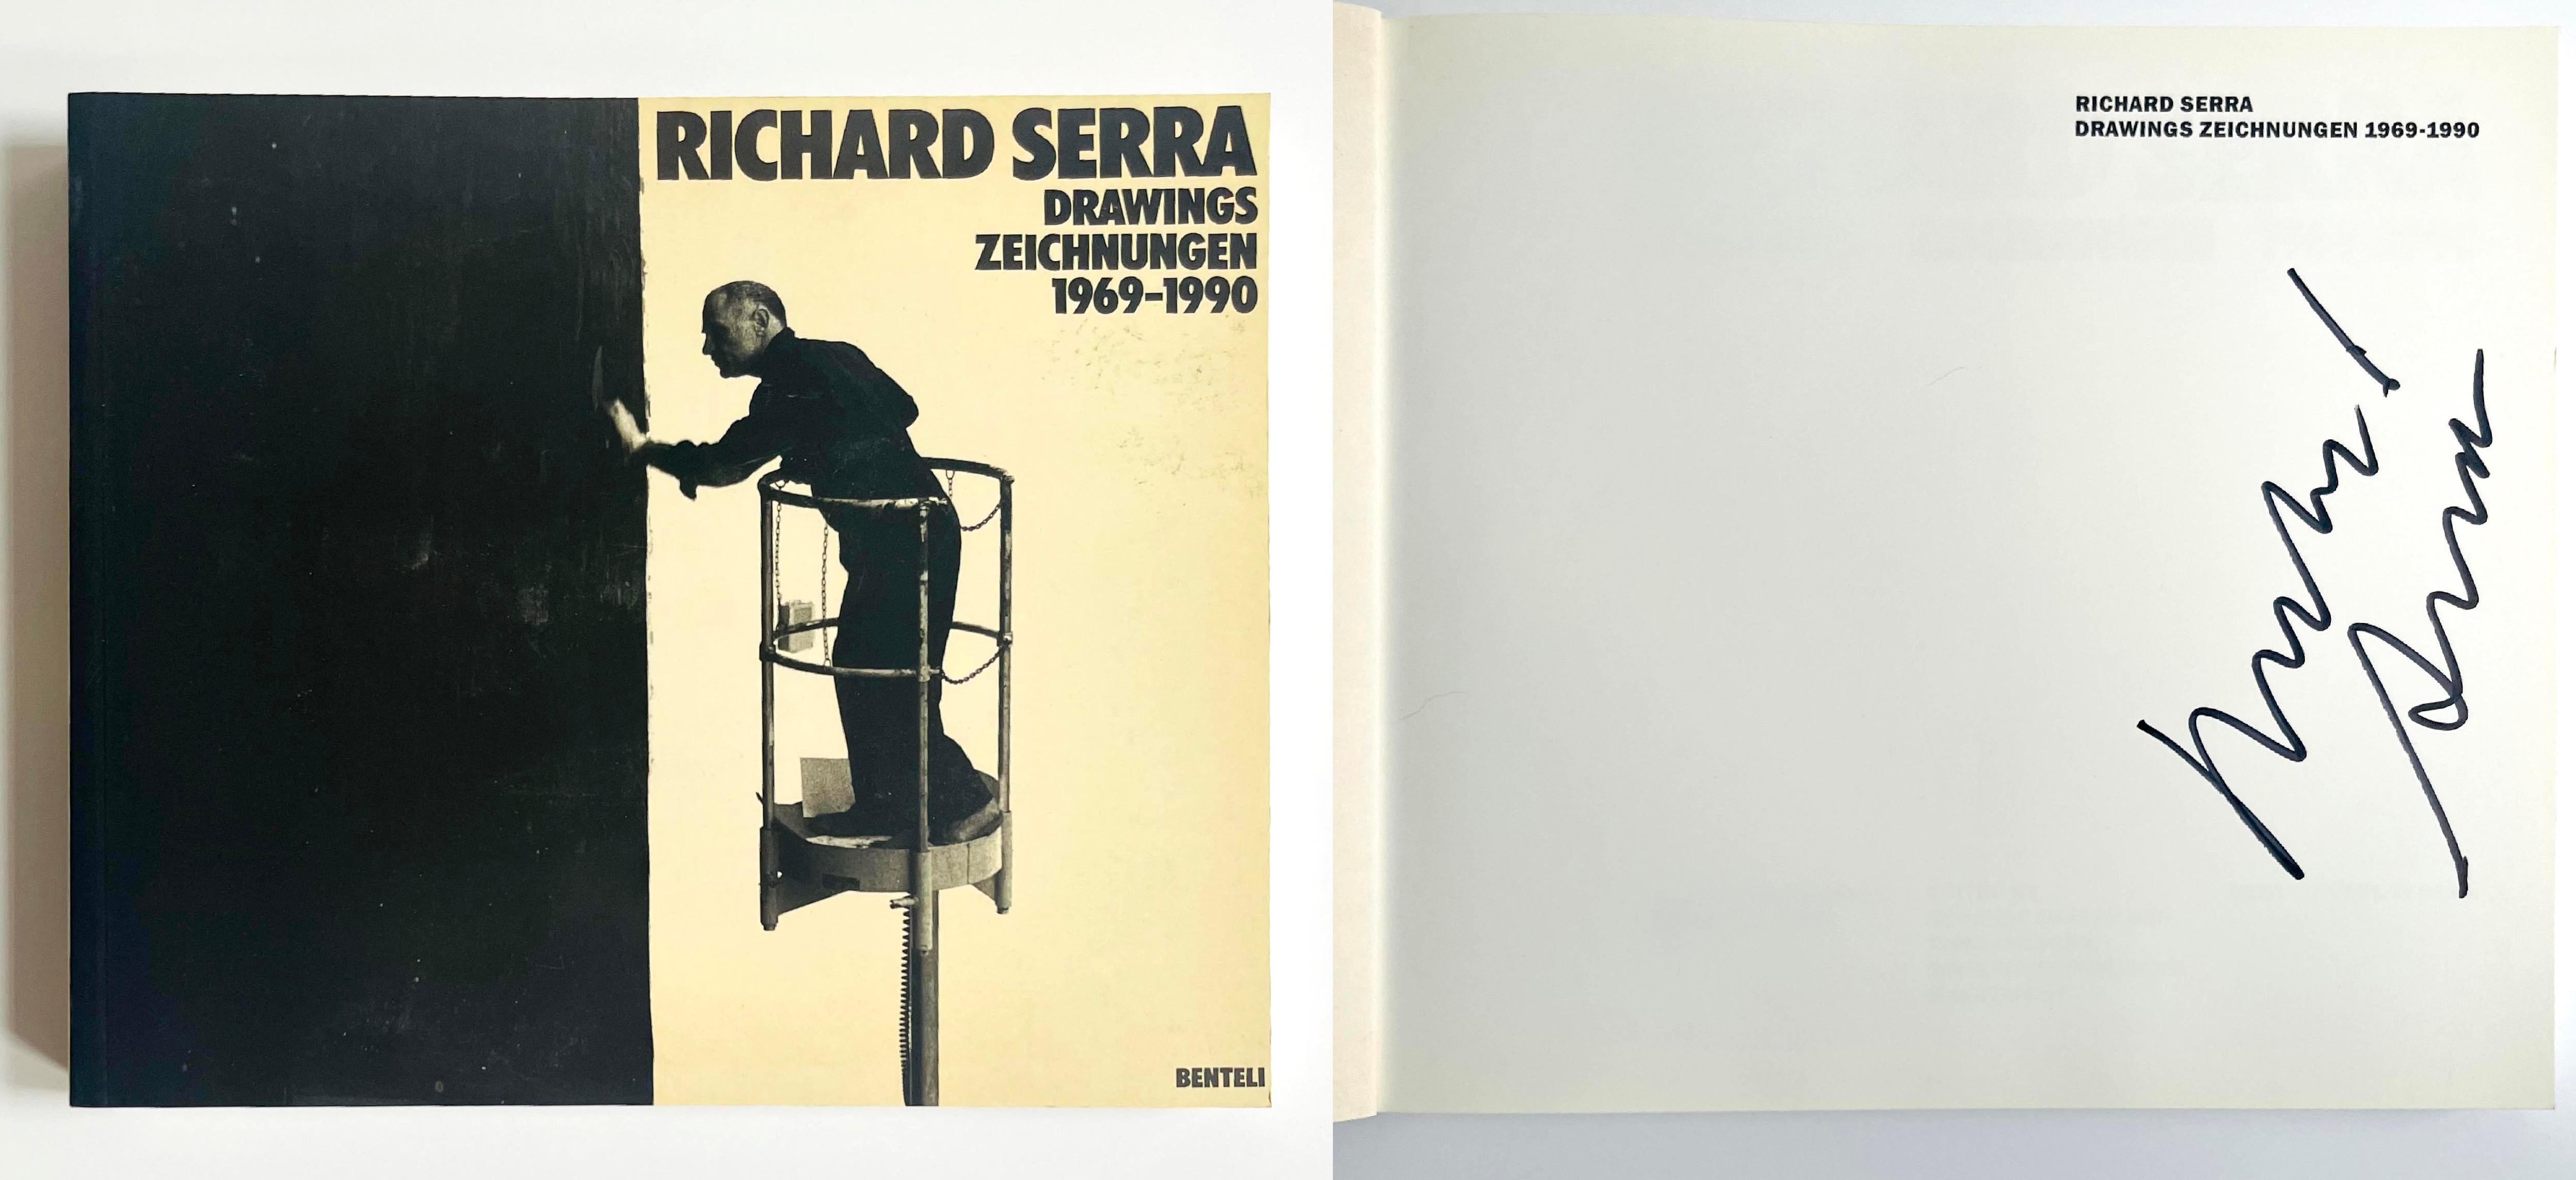 Richard Serra Zeichnungen, Zeichnungen 1969-1990, Buch (Hand signiert von Richard Serra)